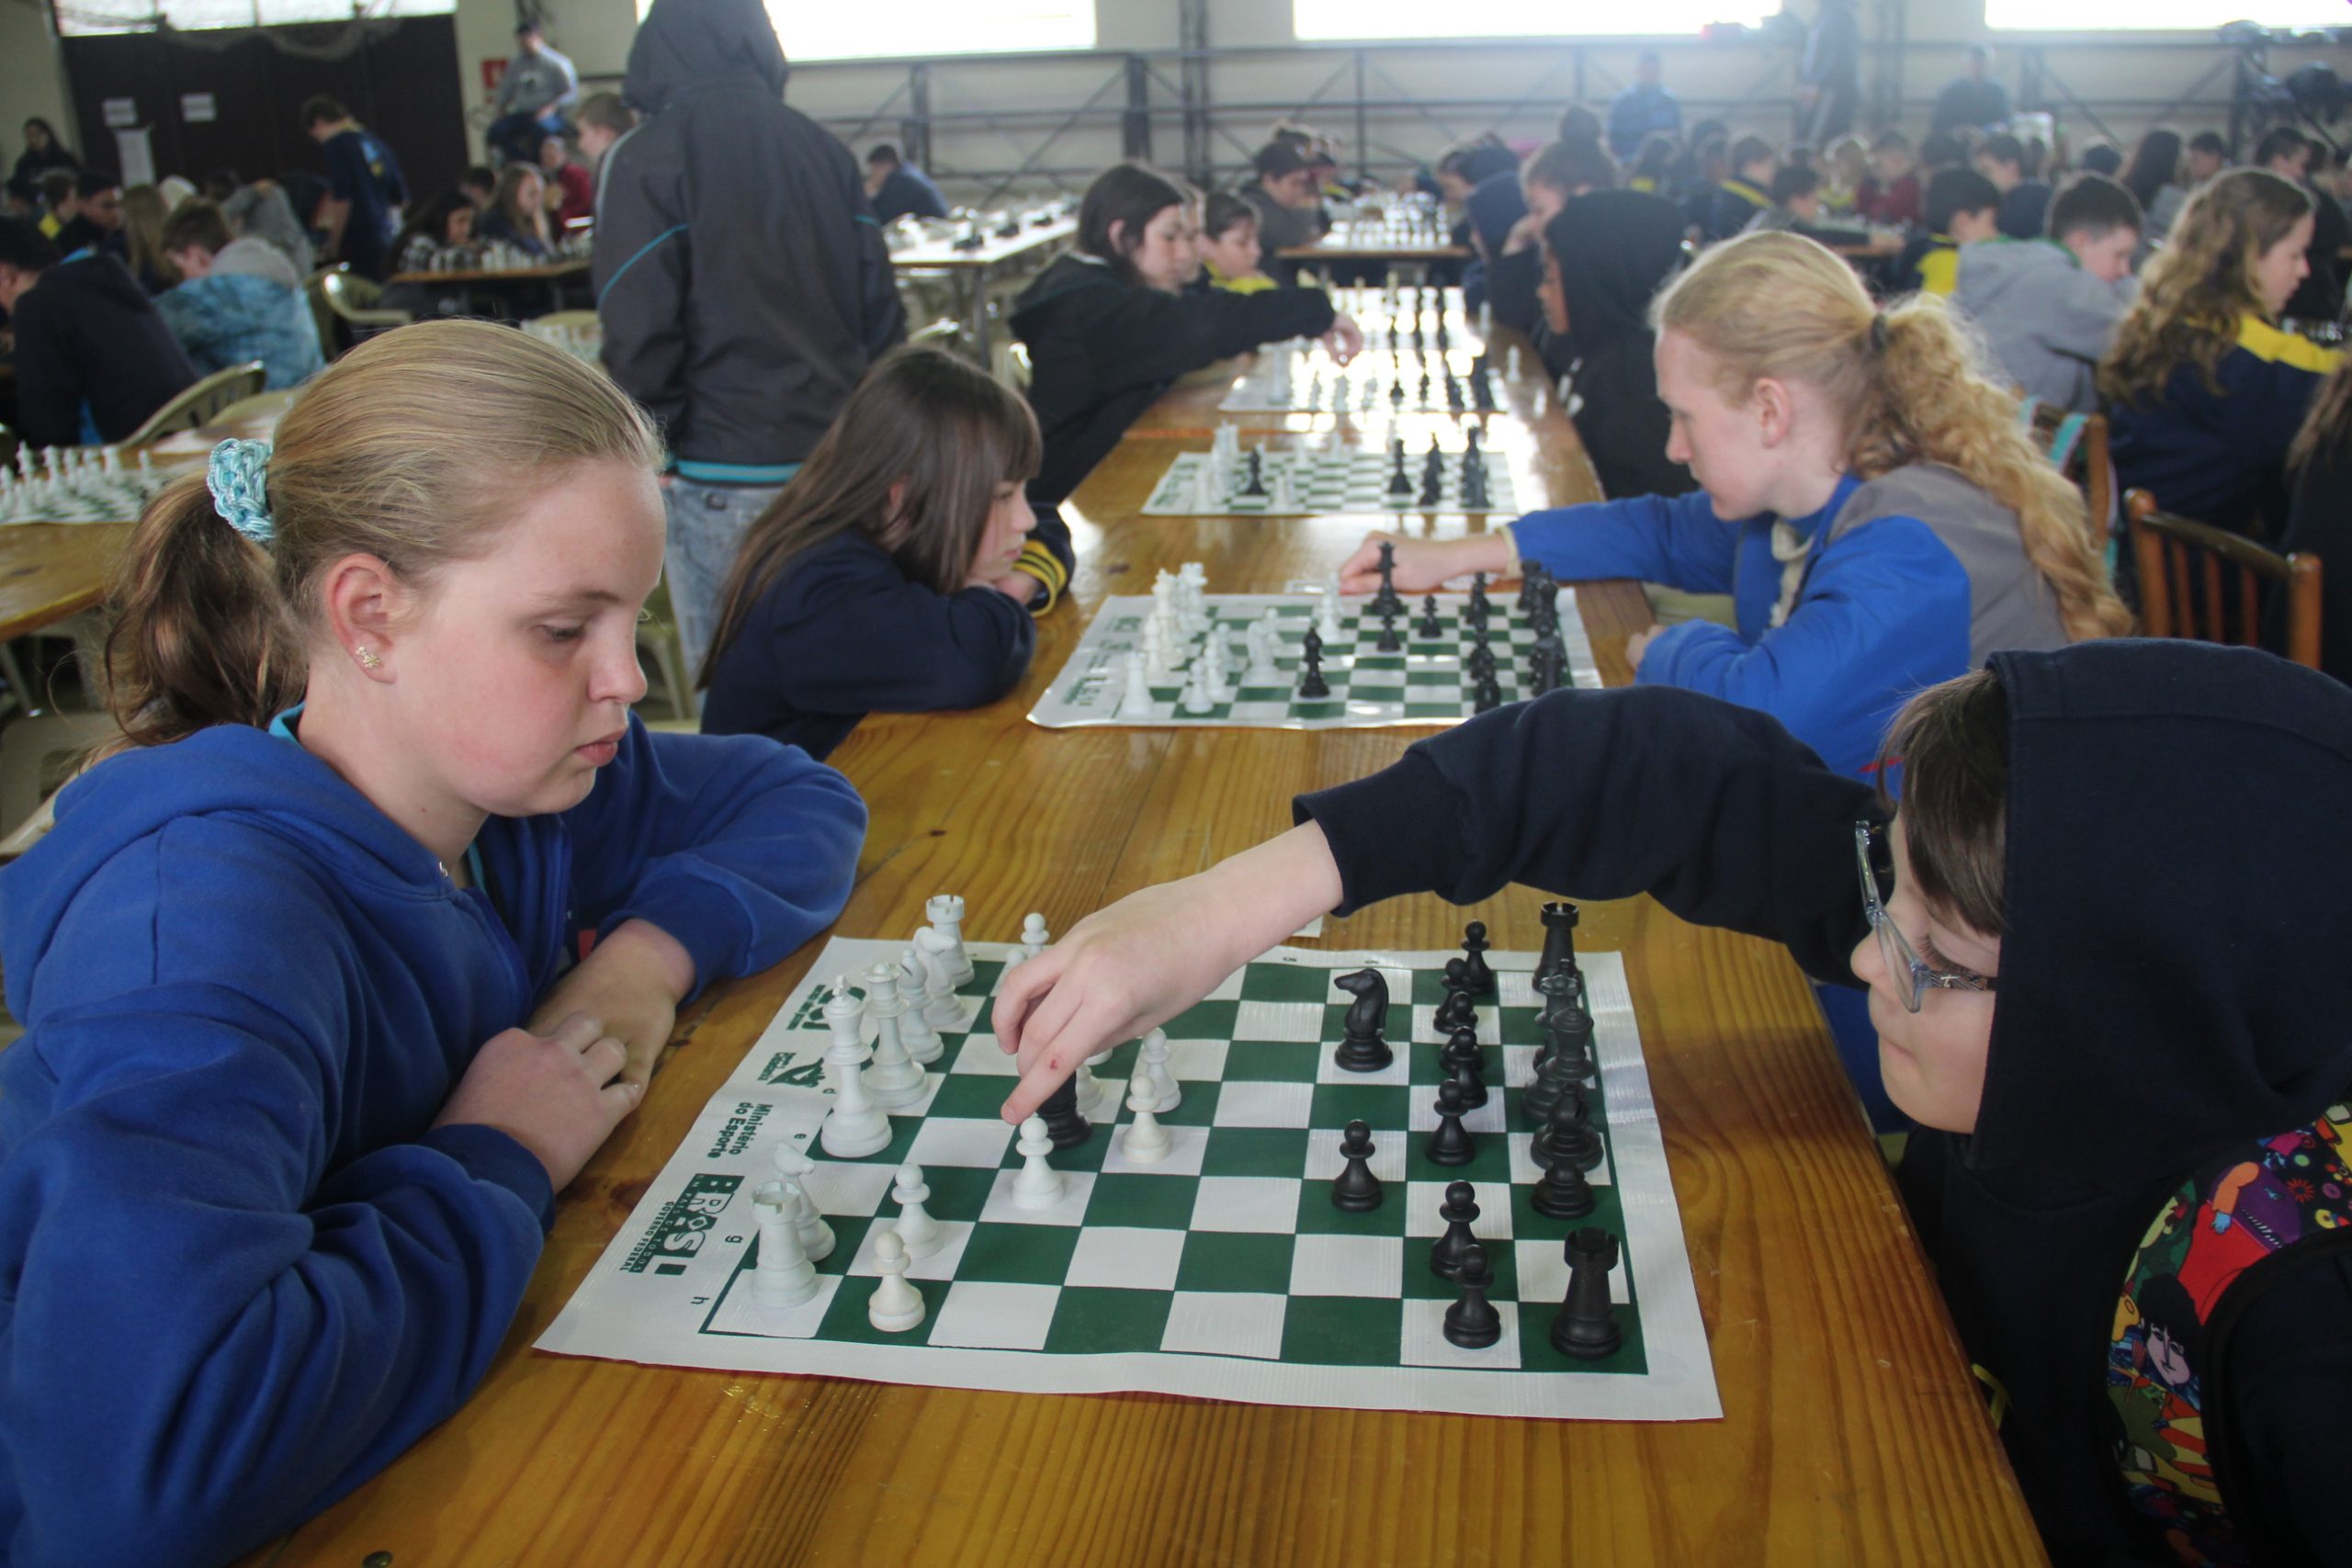 Torneio de xadrez será realizado pela primeira vez em Aparecida de Goiânia